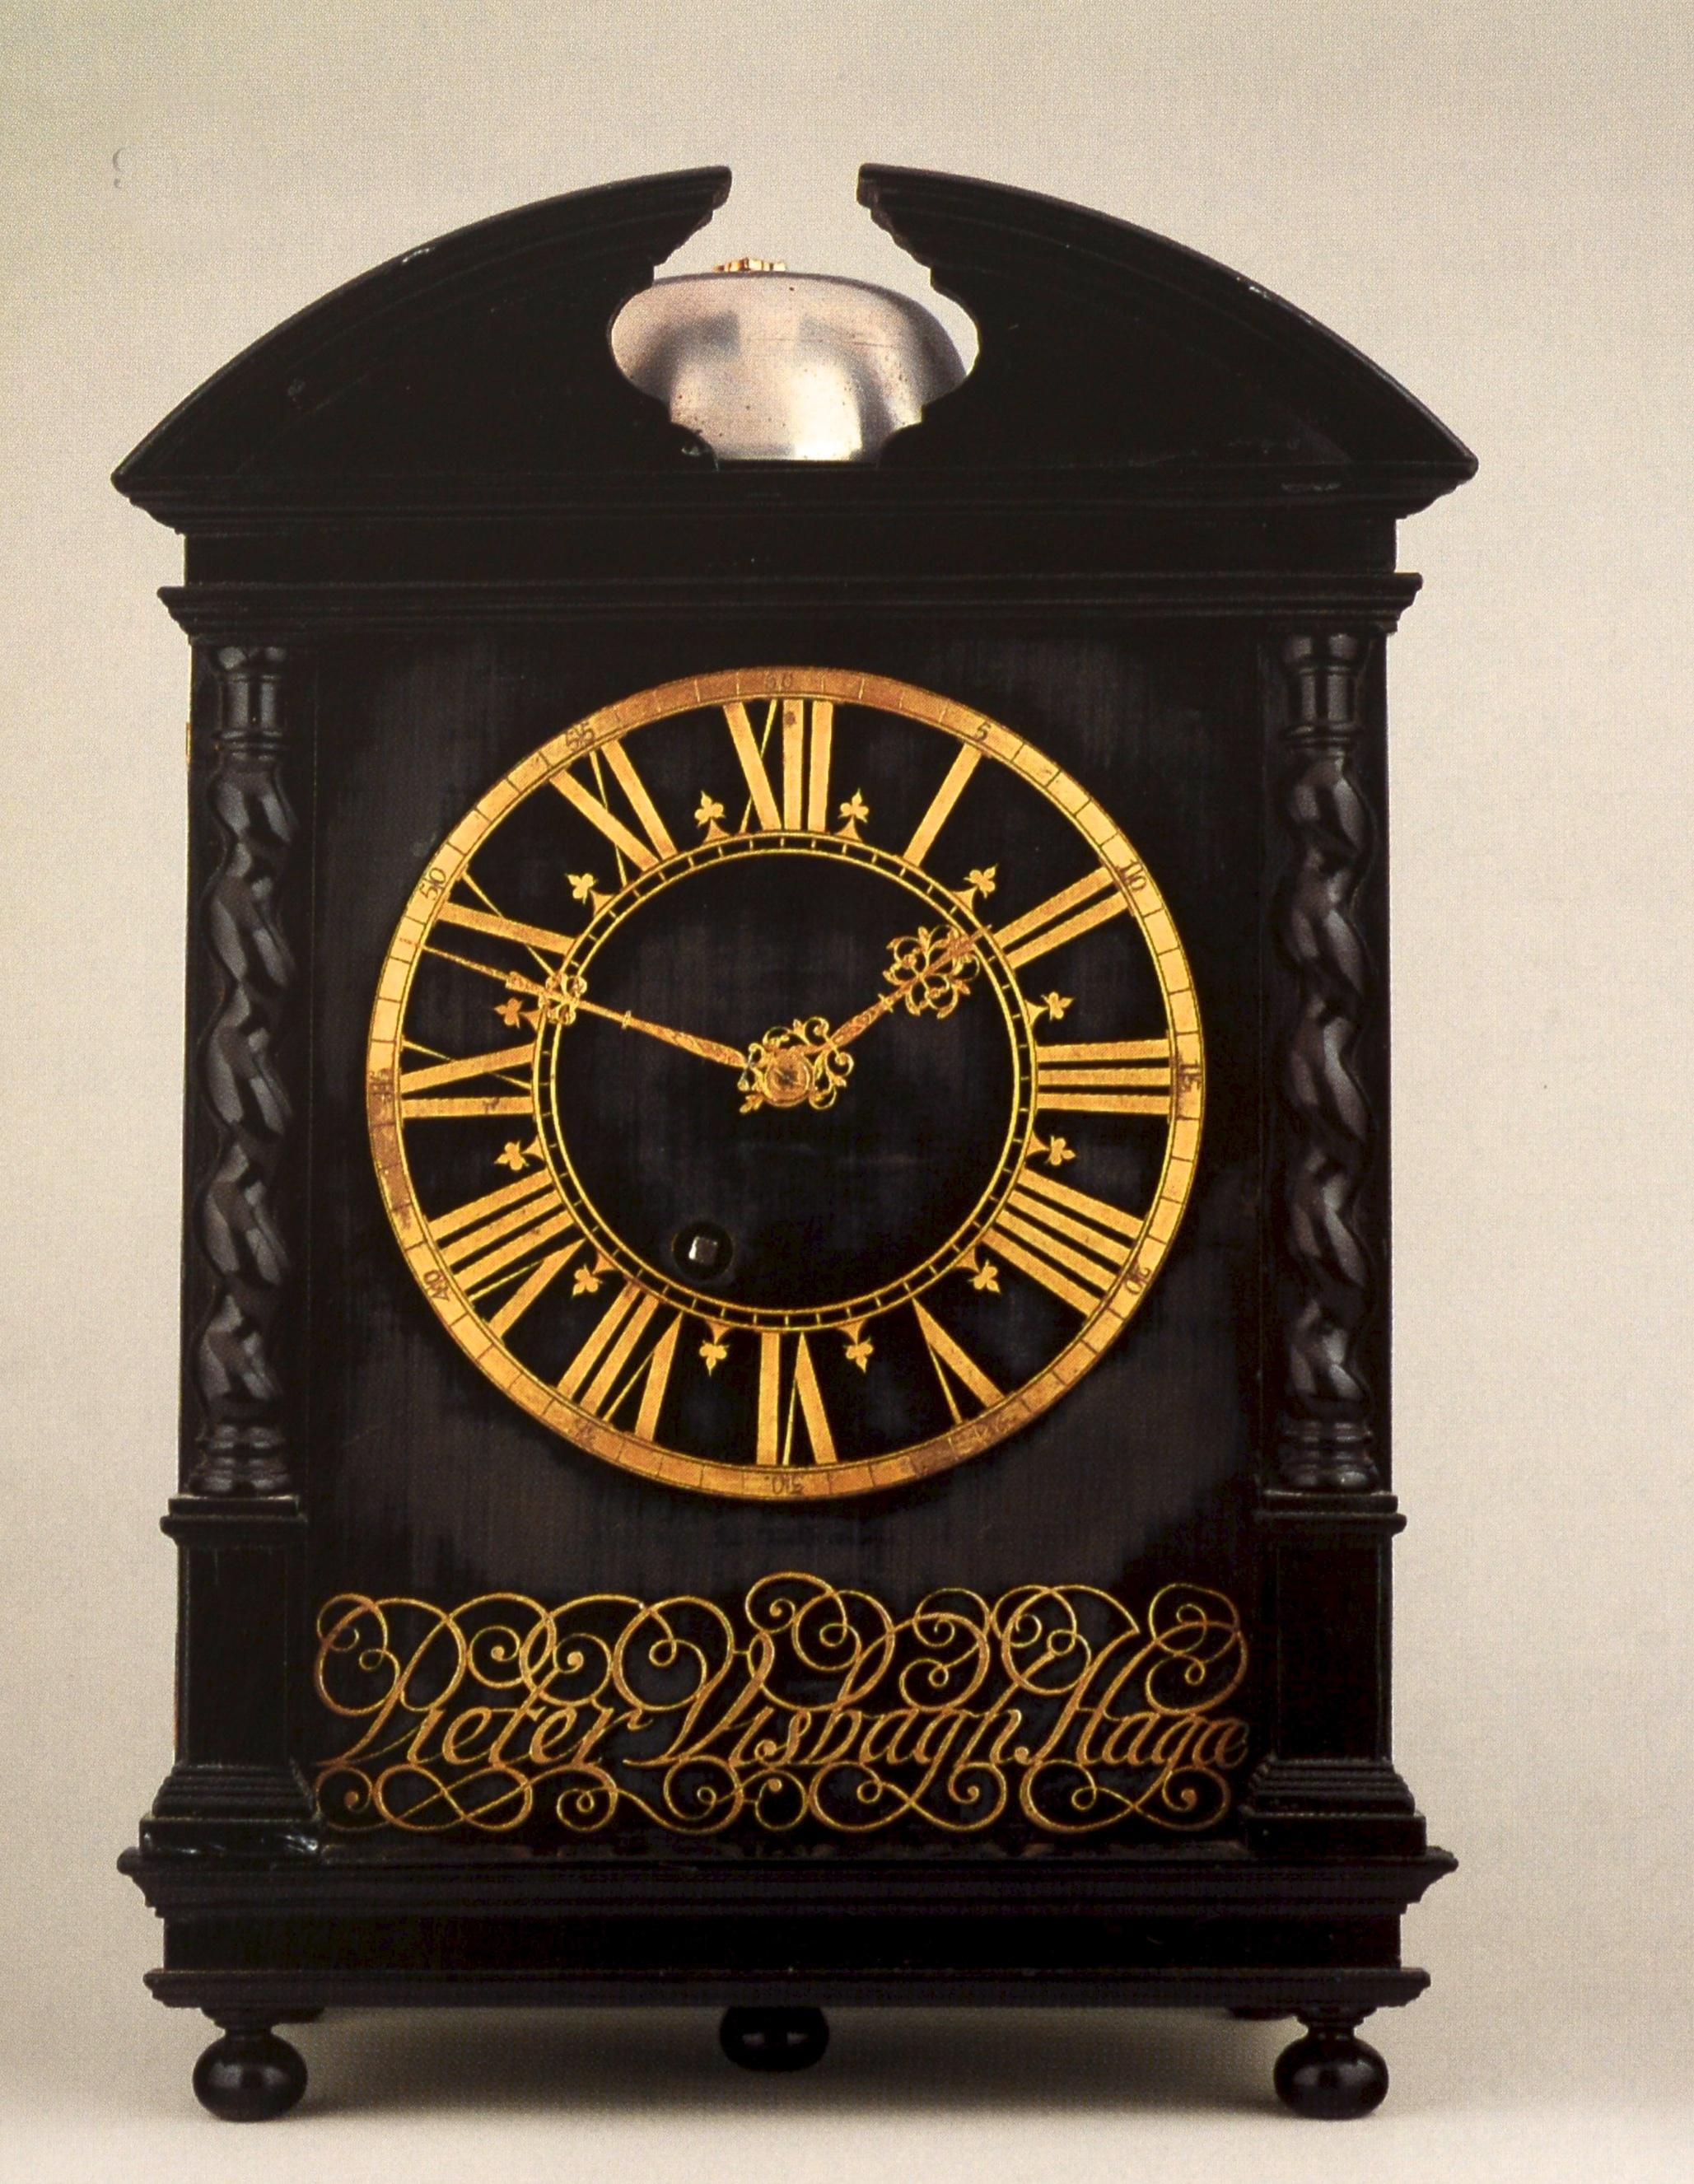 Collection d'horloges de justice Warren Shepro : Sotheby's NY, 26 avril 2001, 1ère édition en vente 15